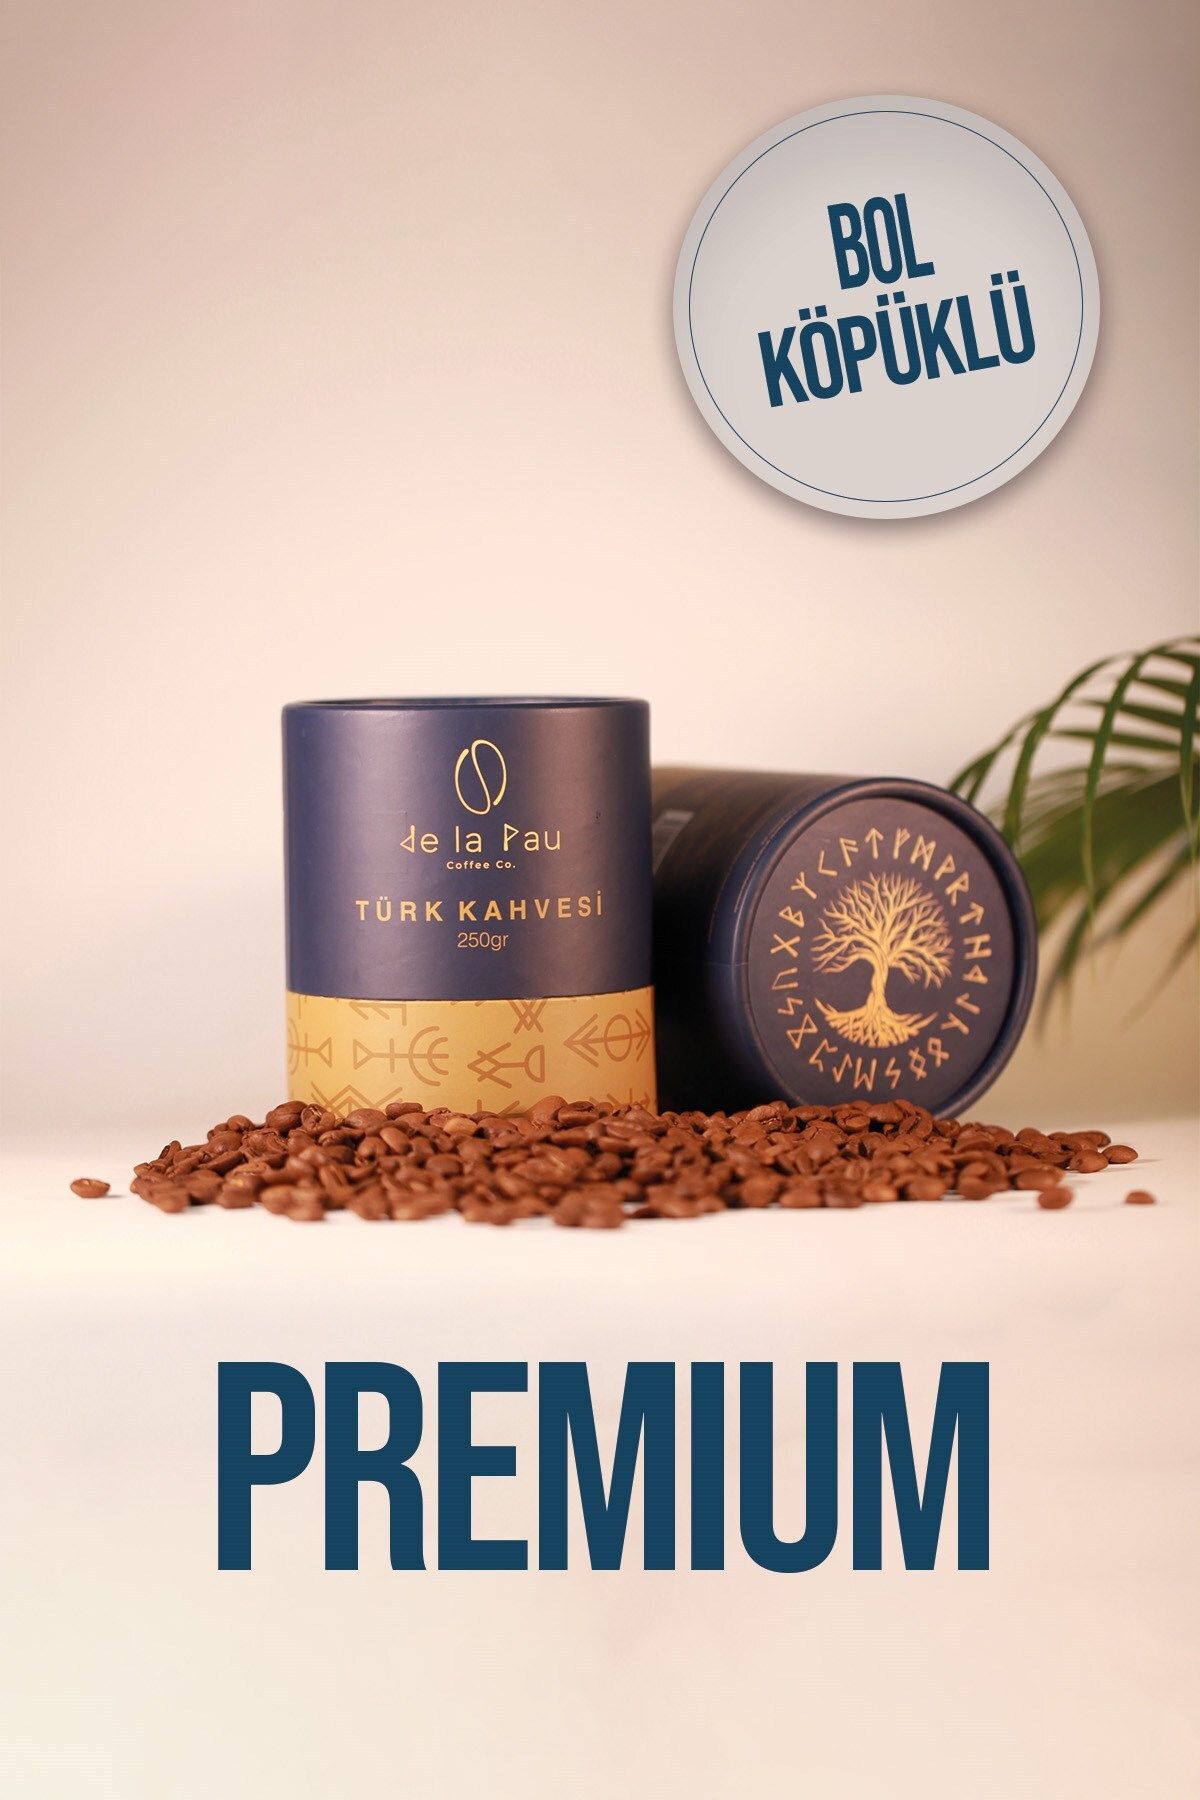 DELAPAU Türk Kahvesi Premium Taze Öğütülmüş Bol Köpüklü Özel Silindir Kutu 250 gr